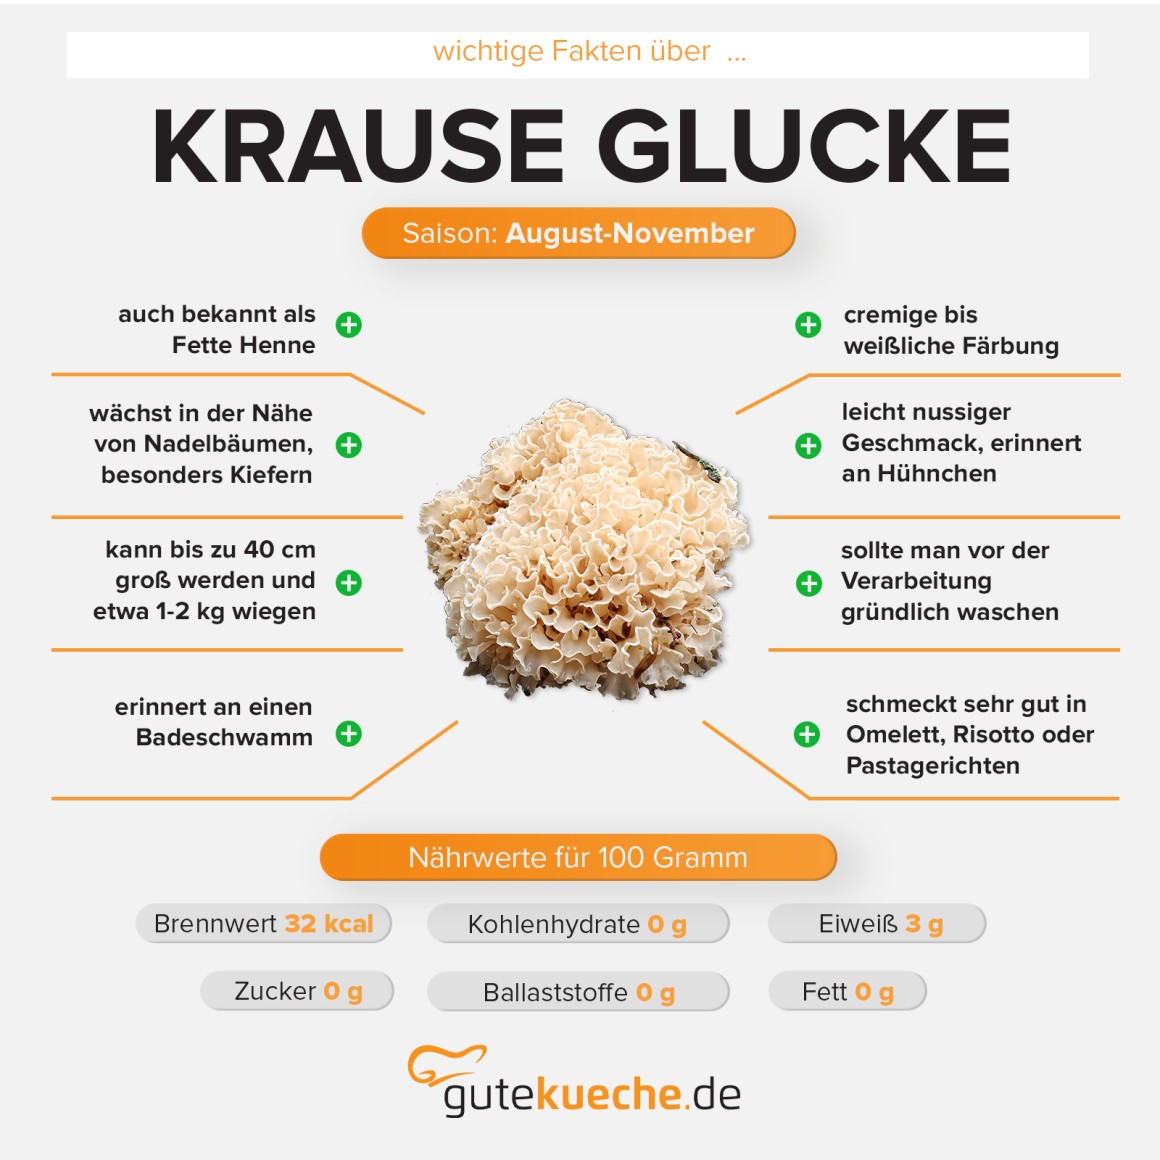 Krause Glucke